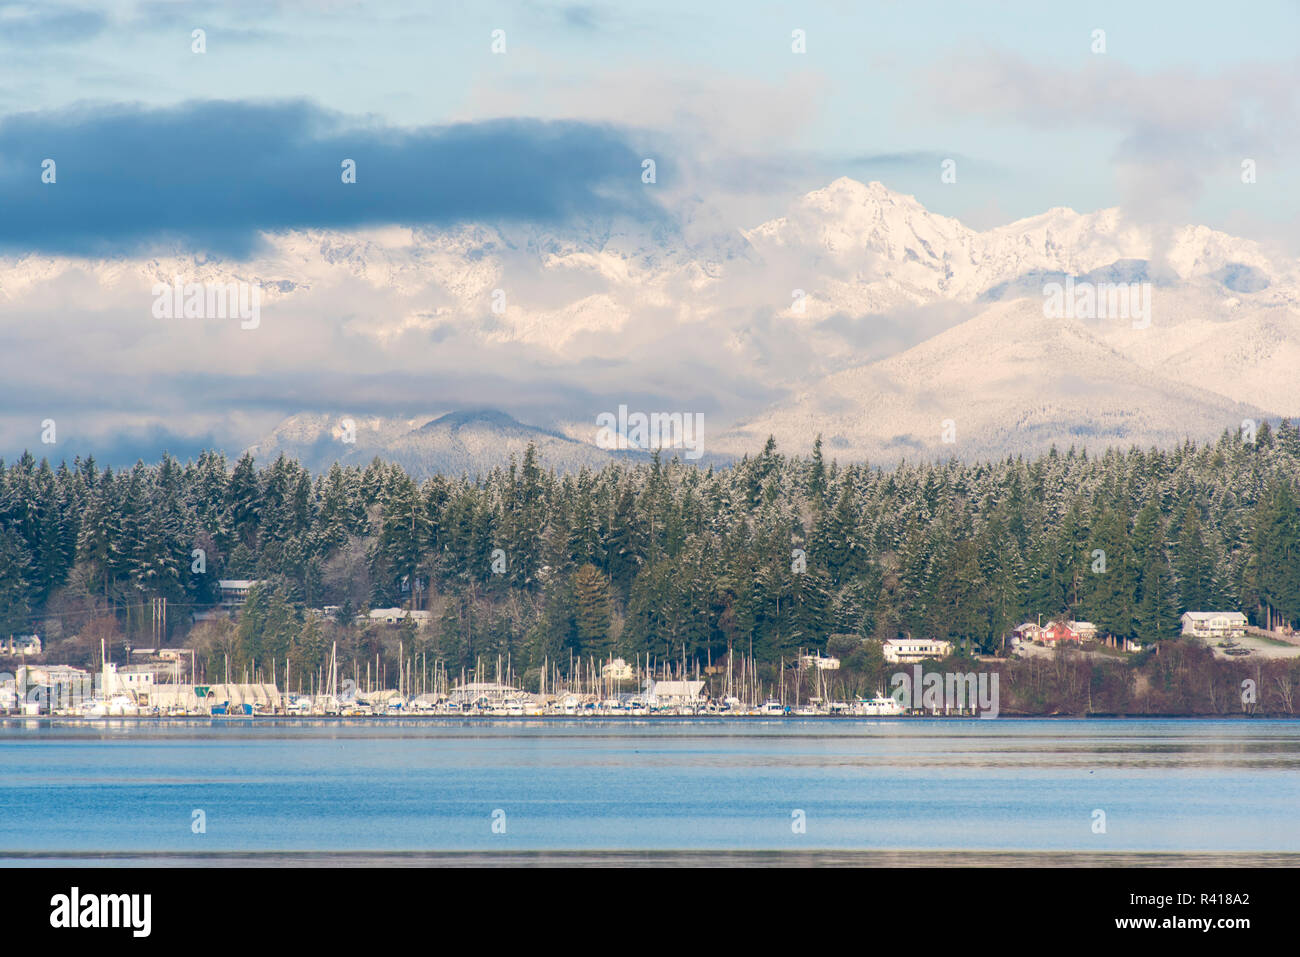 Stati Uniti d'America, nello Stato di Washington, Olympic Mountains. Nevicata fresca cappotti montagne costiere e le Kitsap Peninsula. Foto Stock